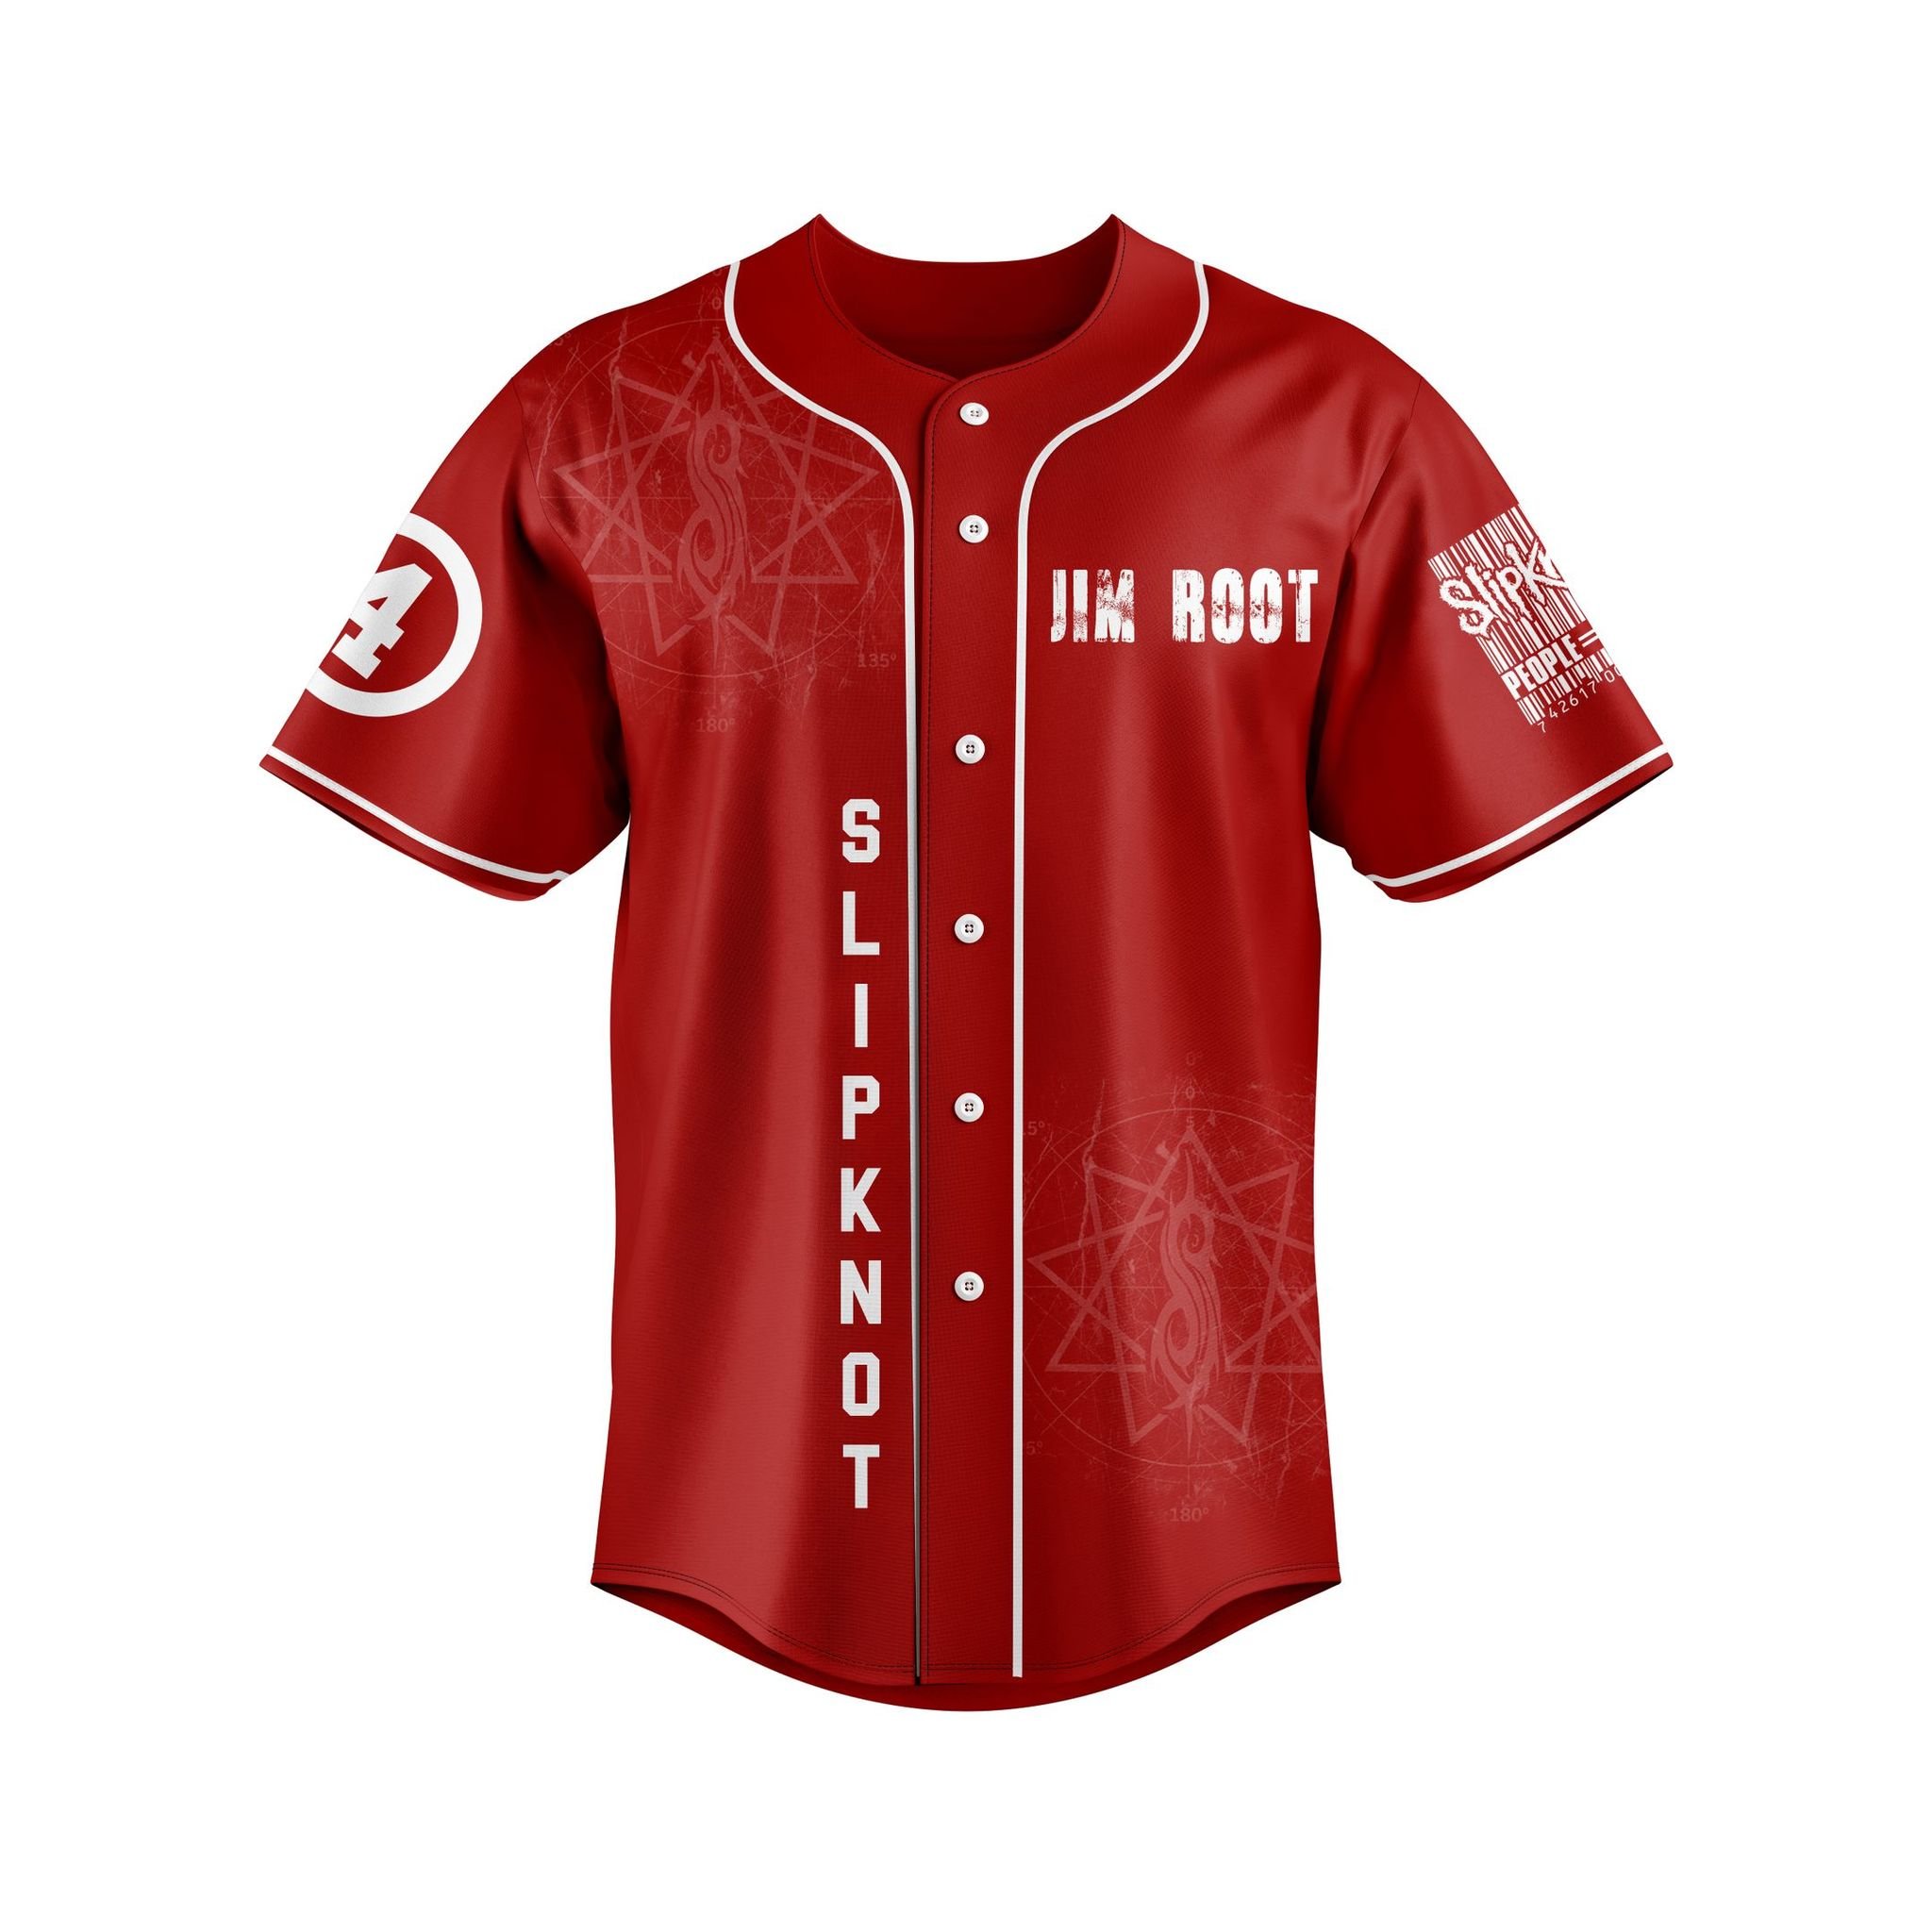 Slipknot custom name baseball jersey 5